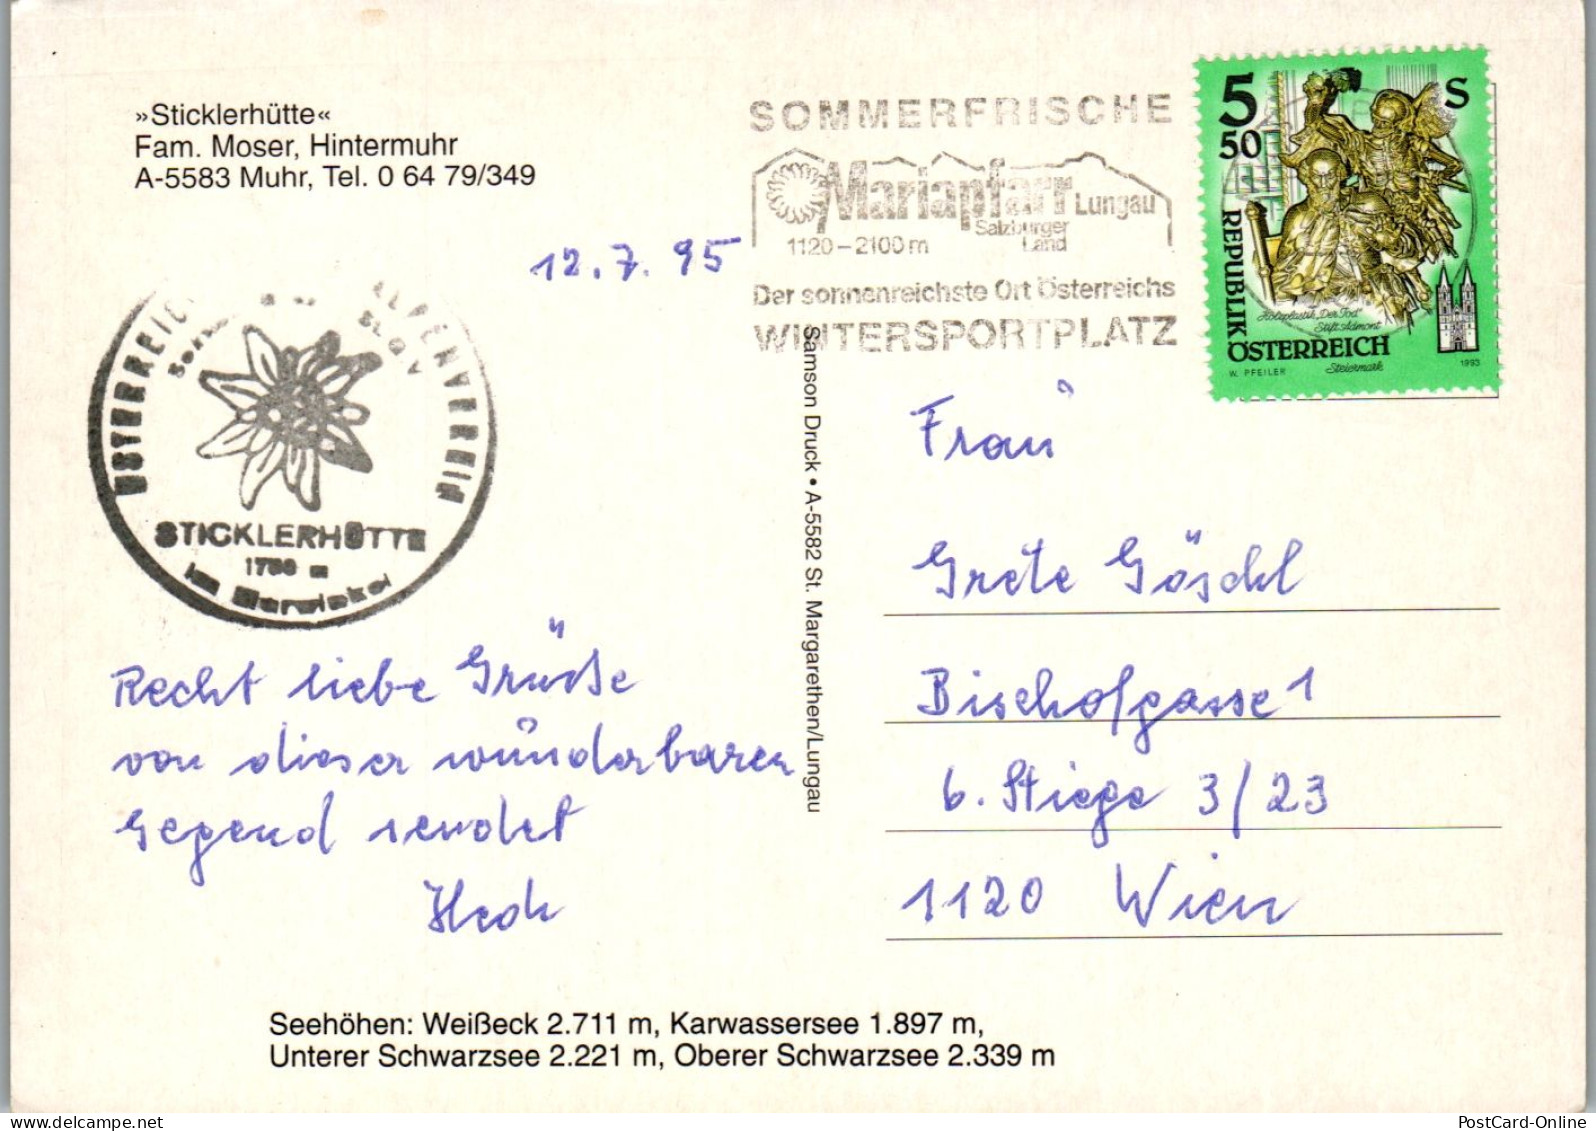 46590 - Salzburg - Muhr , Sticklerhütte , Fam. Moser , Hintermuhr , Weißeck , Karwassersee , Schwarzsee - Gelaufen 1995 - Tamsweg